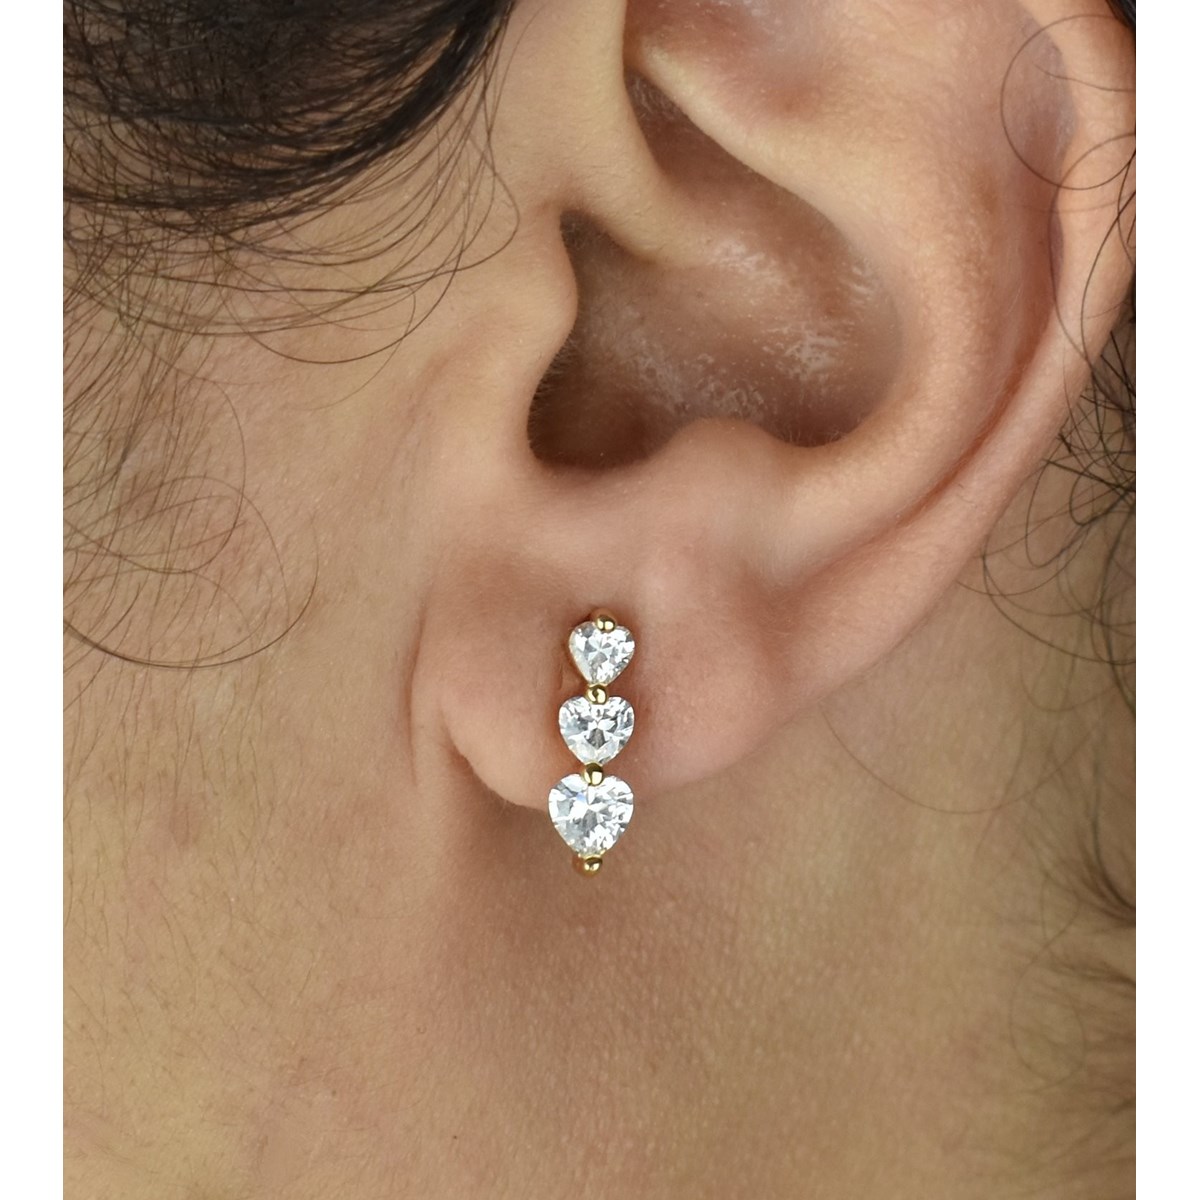 Boucles d'oreilles 3 coeurs oxyde de zirconium Plaqué or 750 3 microns - vue 2